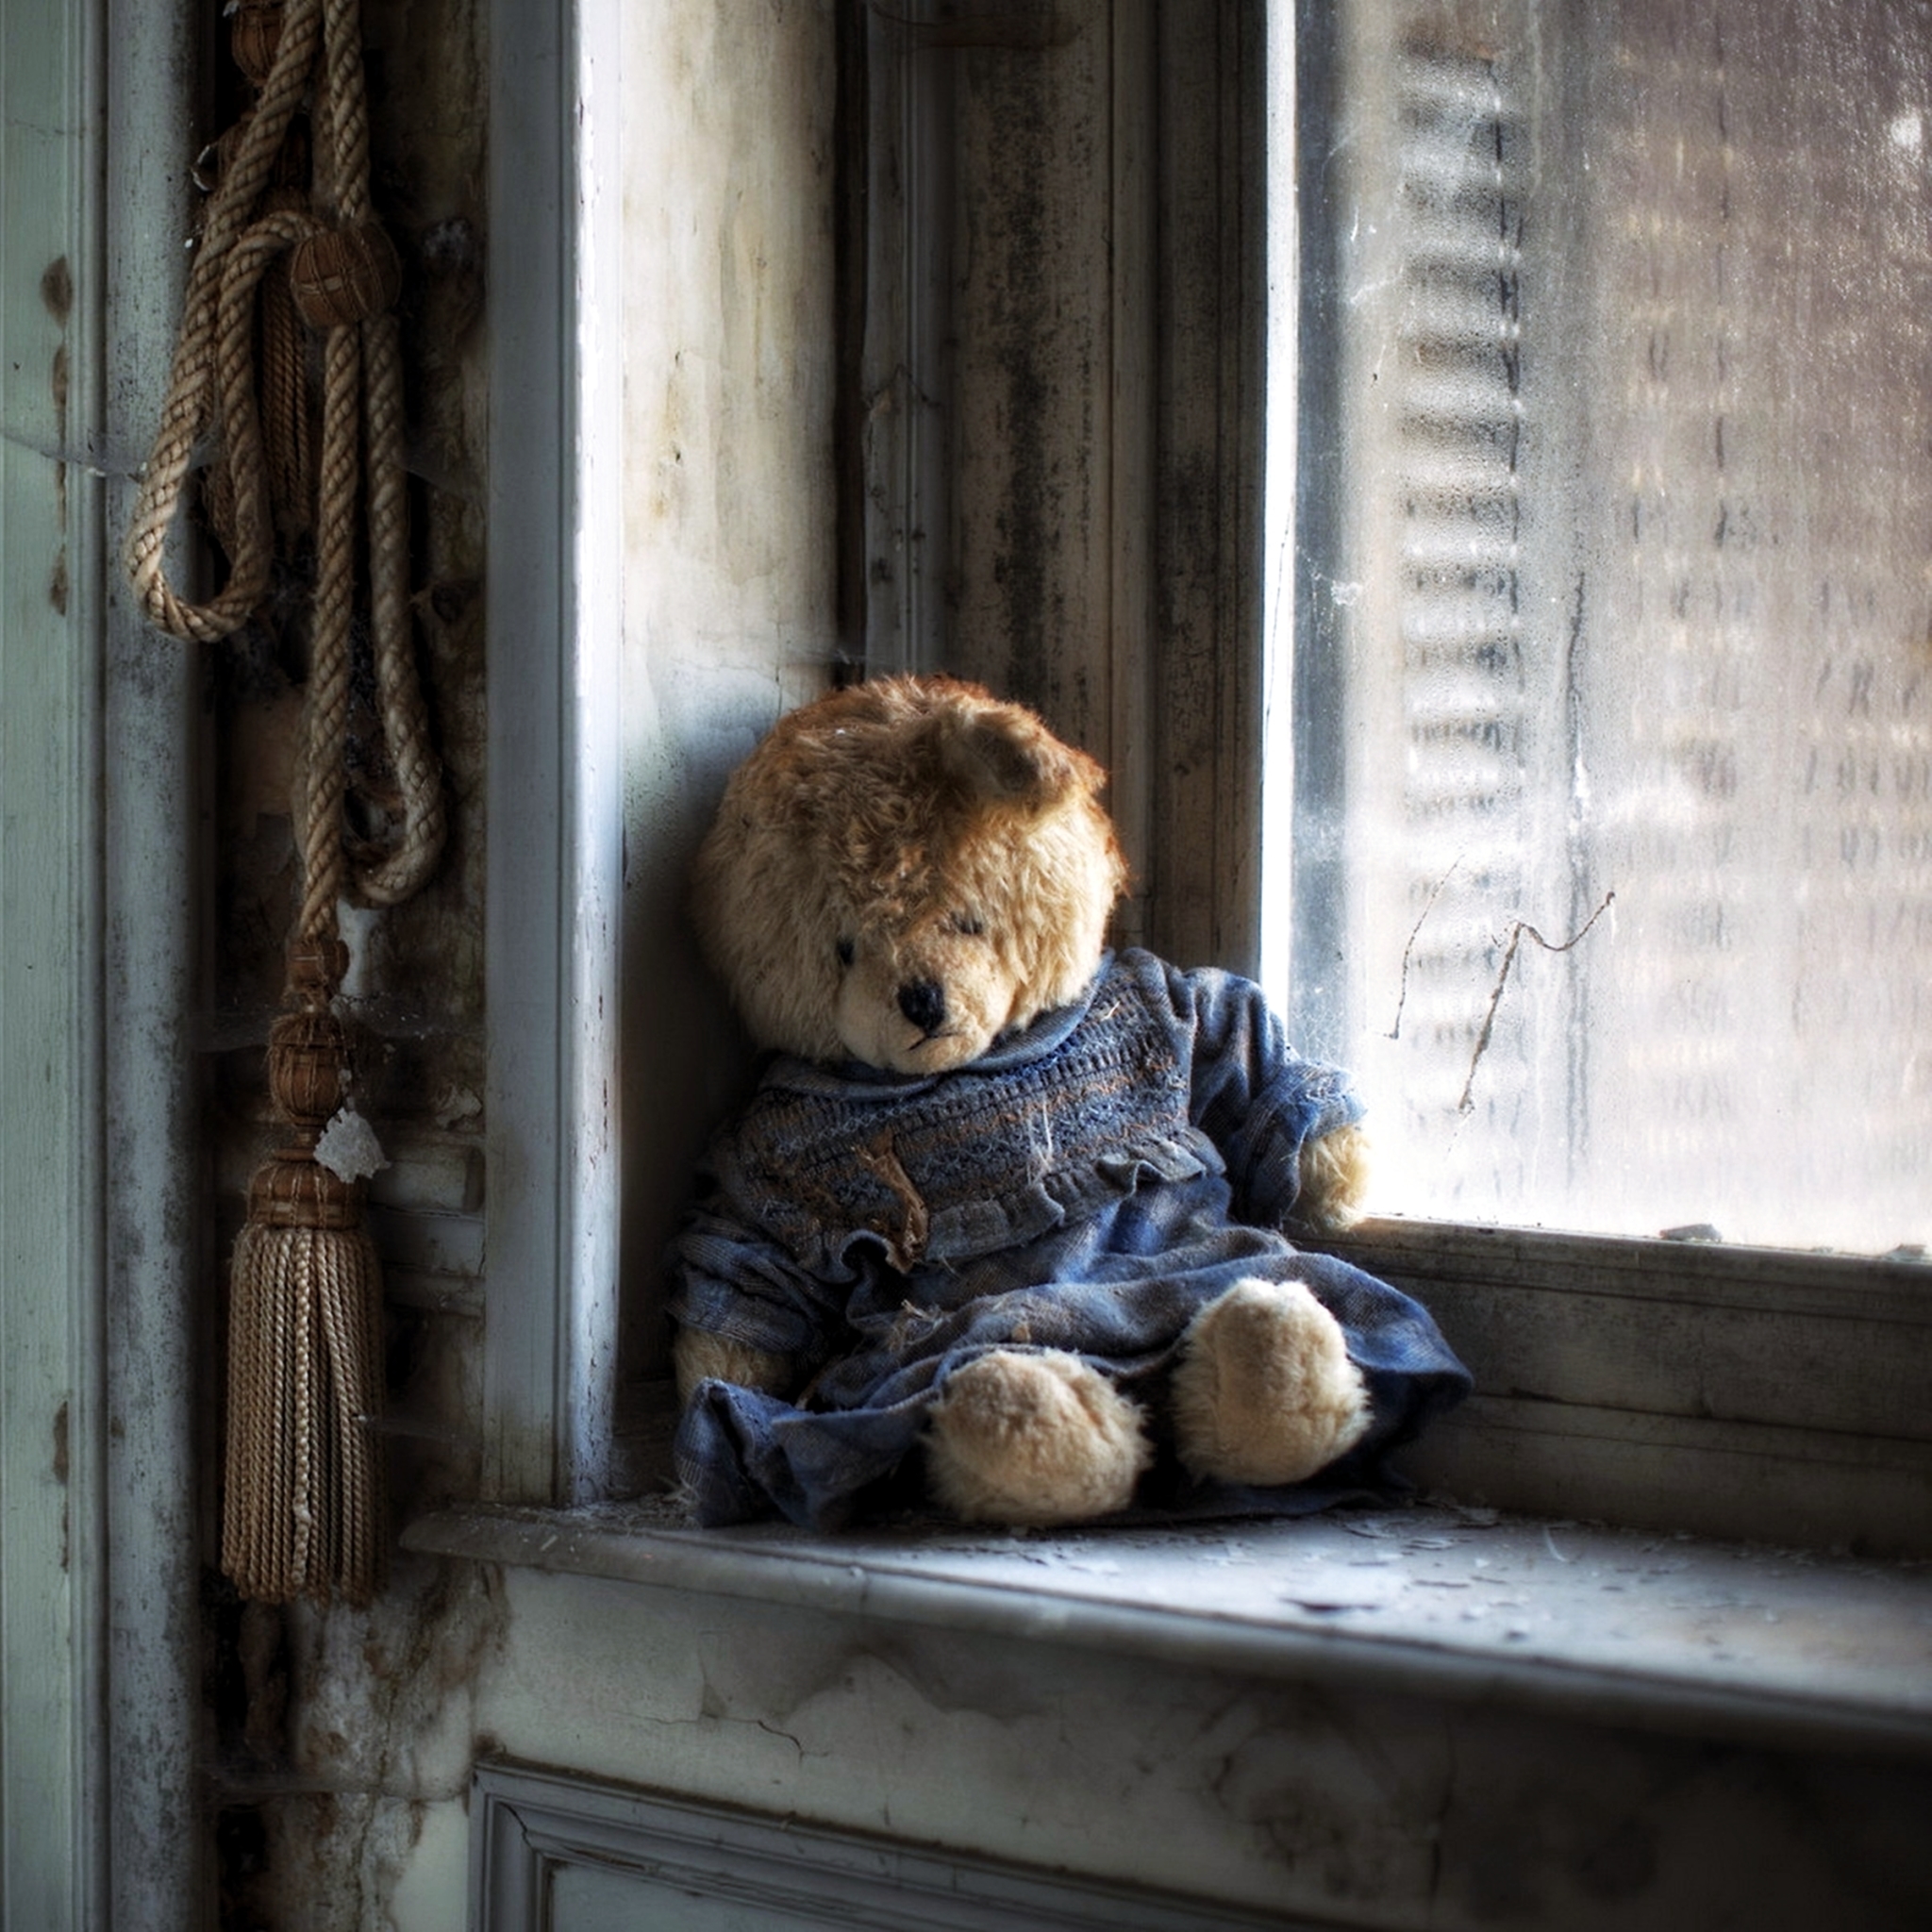 Hình ảnh một chú gấu buồn bã, thất vọng và cô đơn